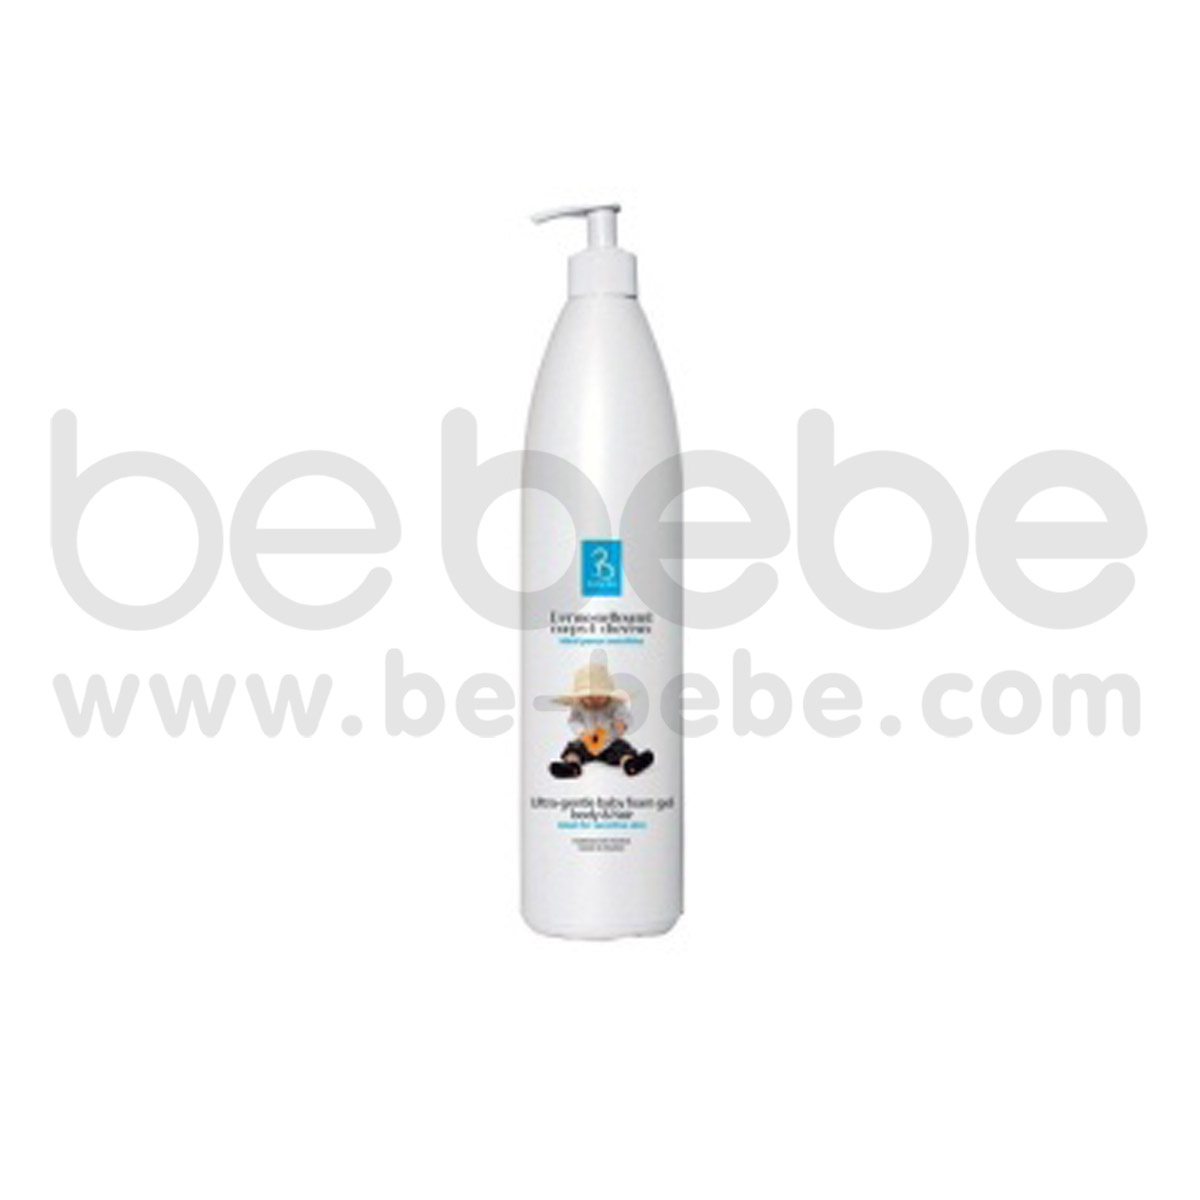 BeBe Bio : Cleansing gel 500 ml.